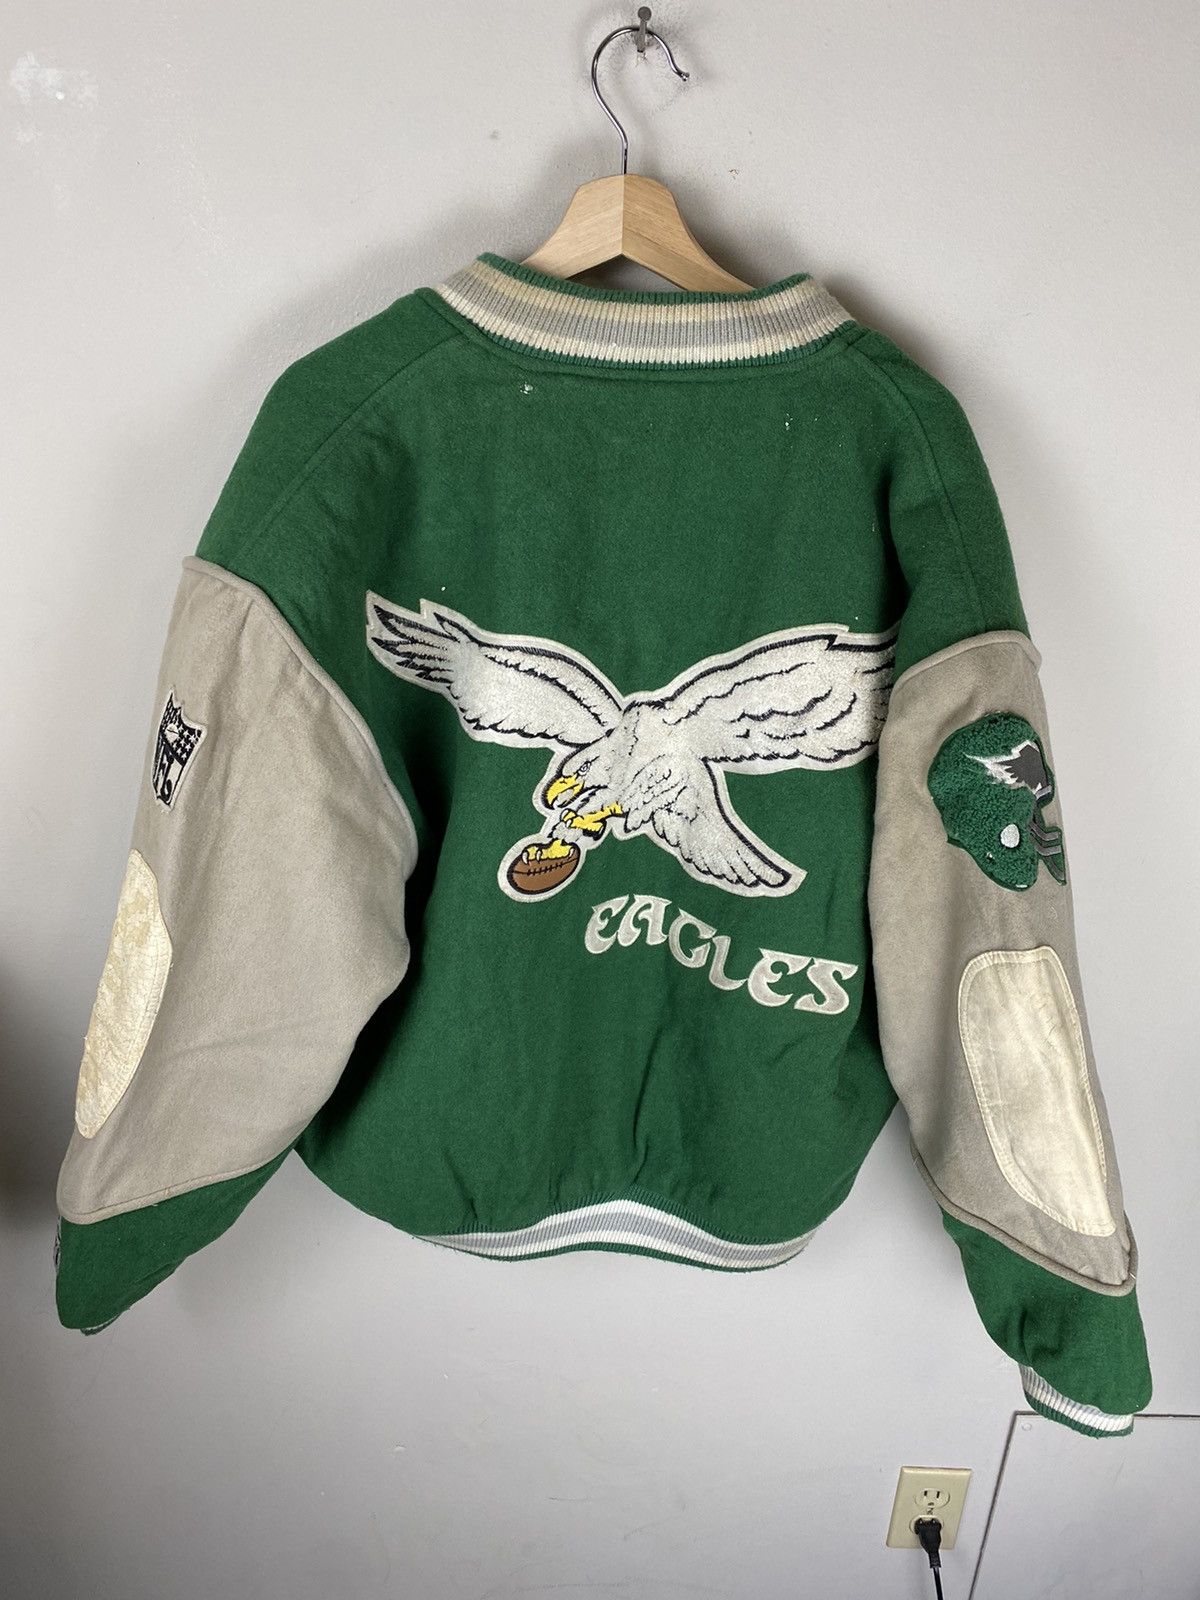 Vintage Vintage NFL Philadelphia Eagles Varsity Jacket Size US XL / EU 56 / 4 - 4 Thumbnail